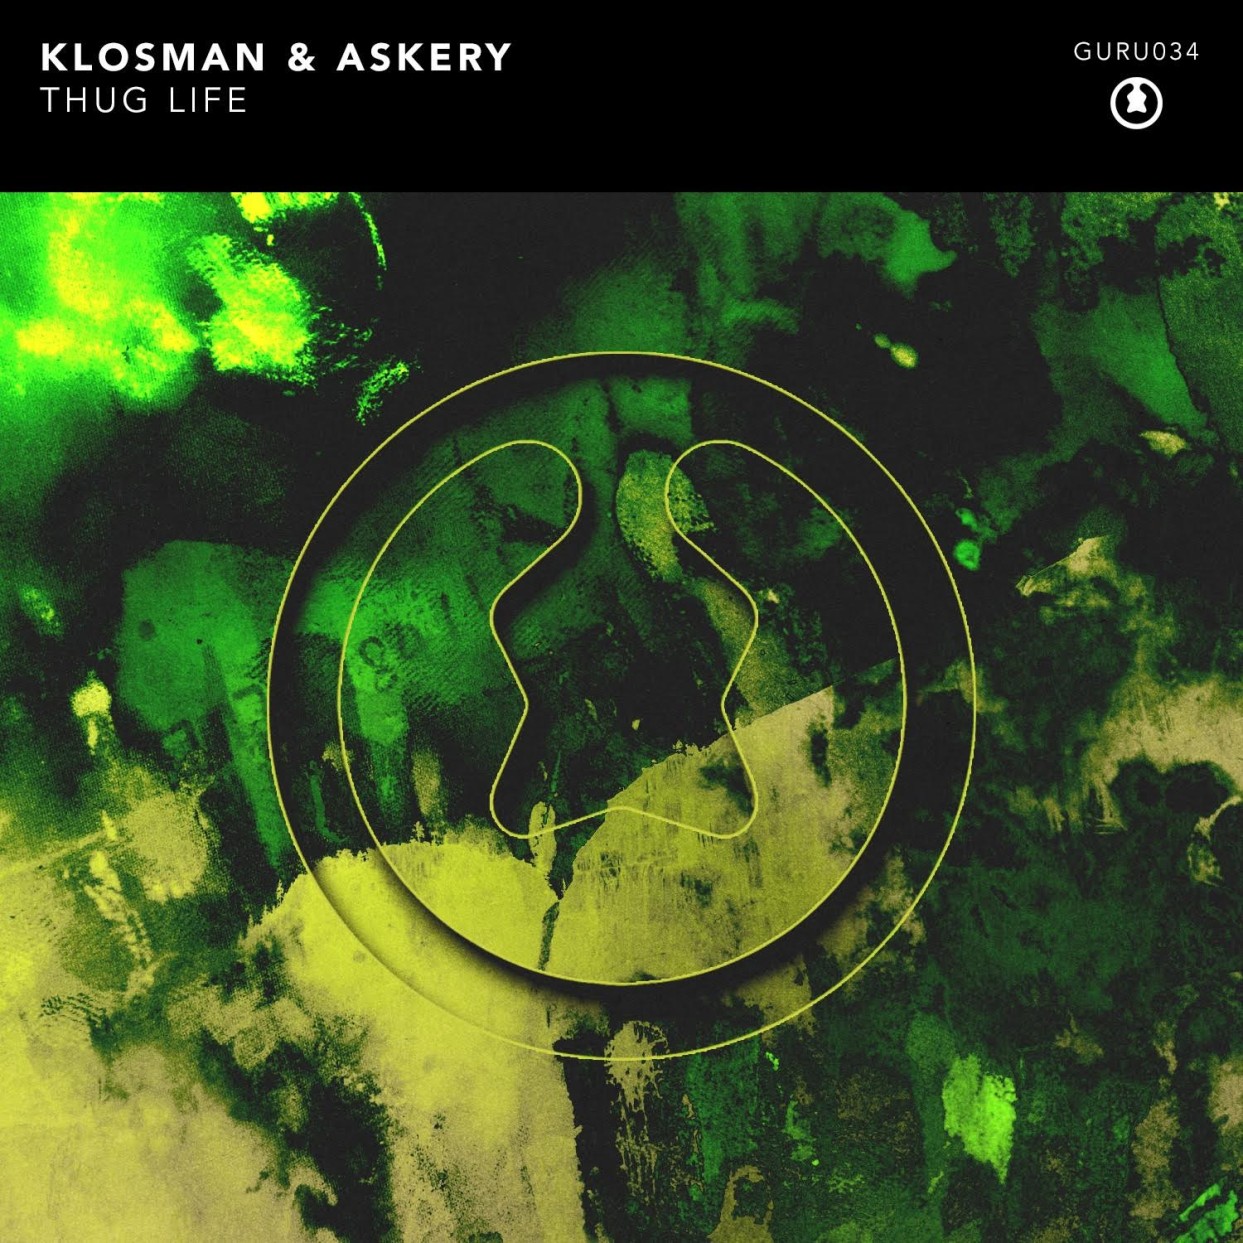 Klosman & Askery